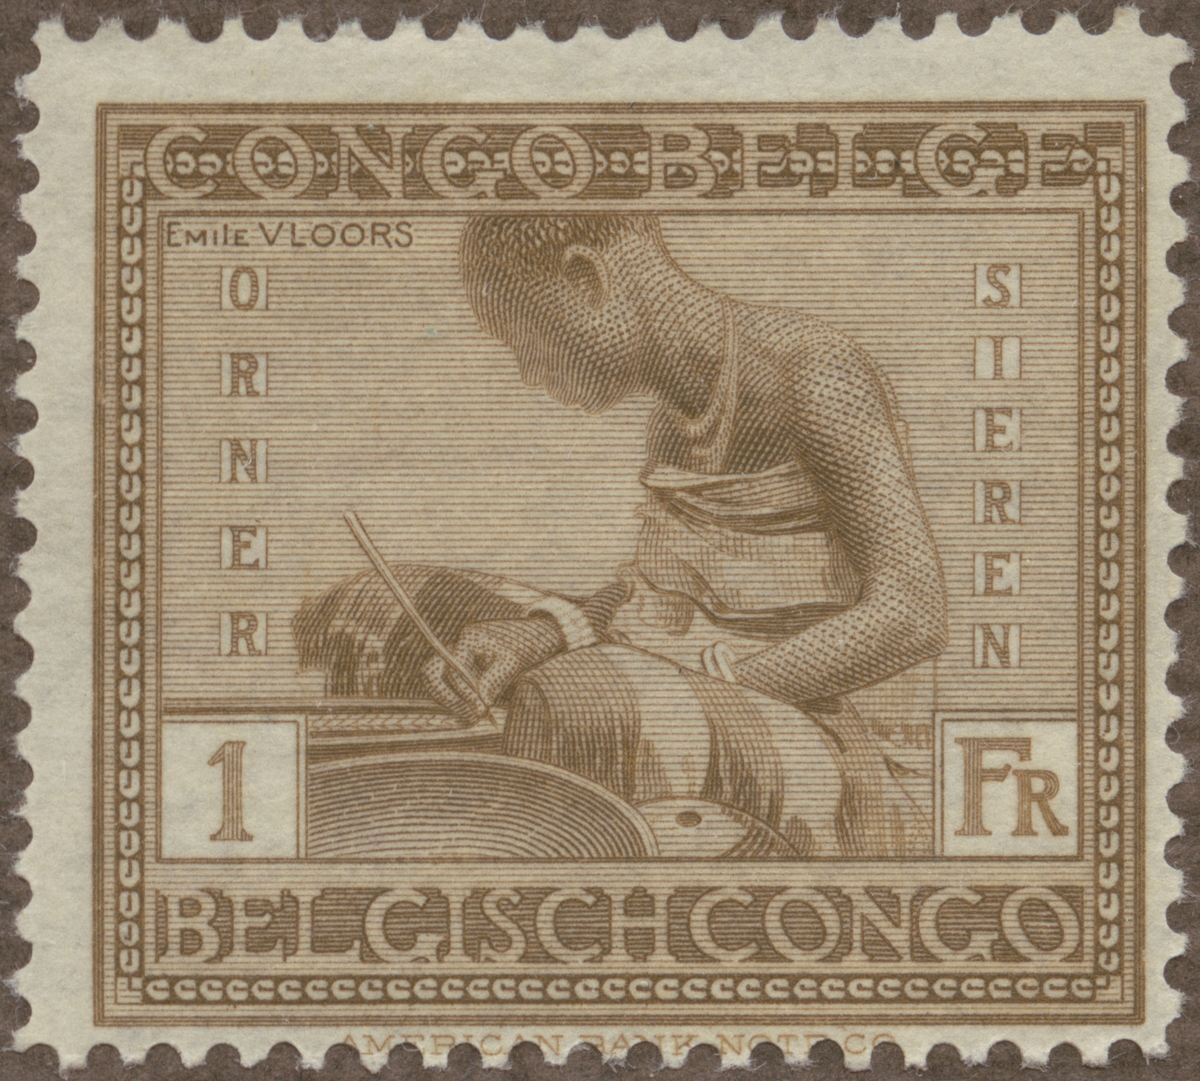 Frimärke ur Gösta Bodmans filatelistiska motivsamling, påbörjad 1950.
Frimärke från Belgiska Congo, 1923. Motiv av keramikarbete.